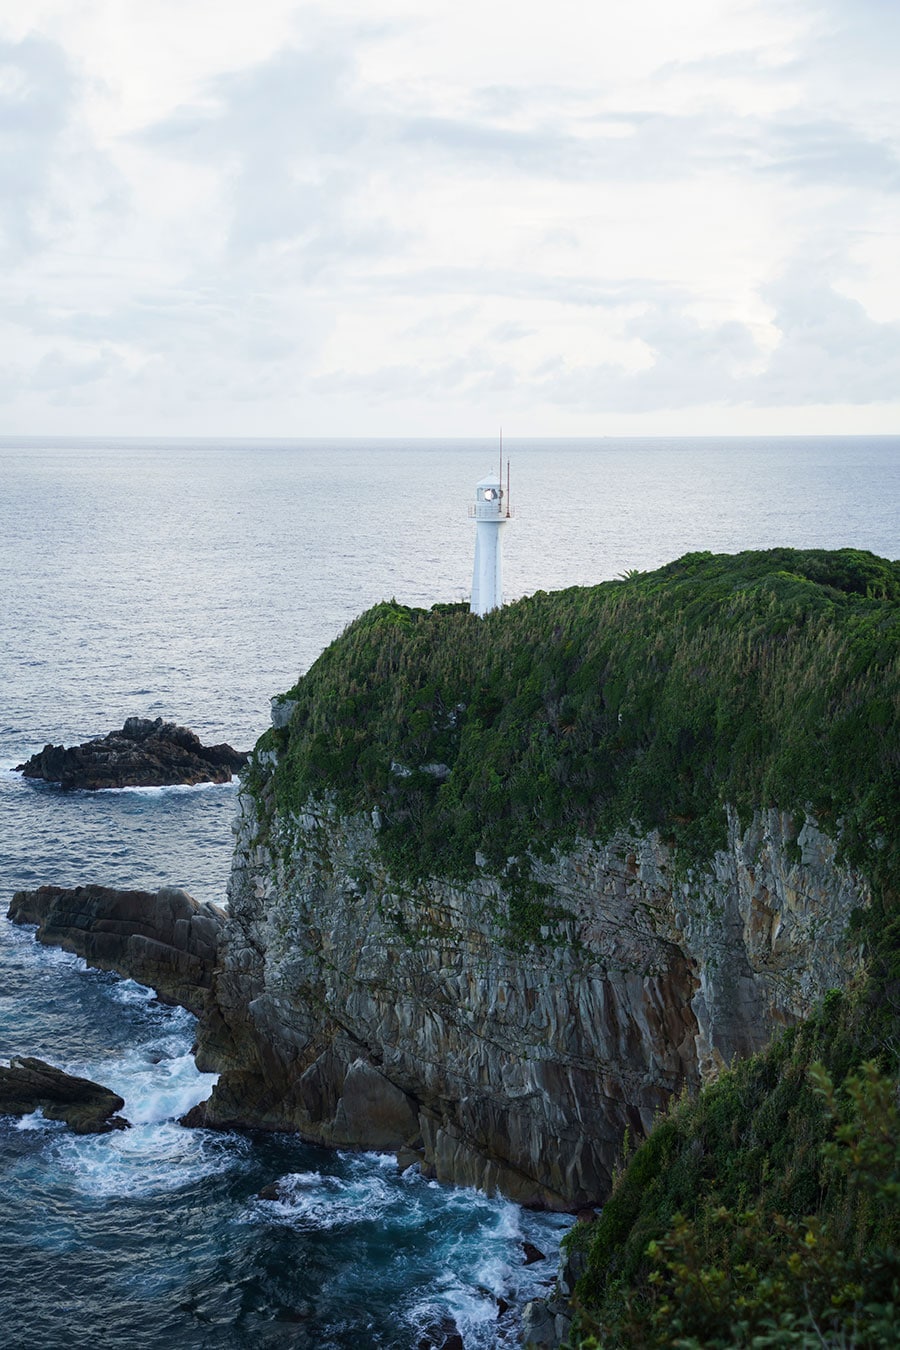 展望台から見る足摺岬灯台。展望台からの視界は270度、水平線がアーチ状に見え地球が丸いことを実感できる。